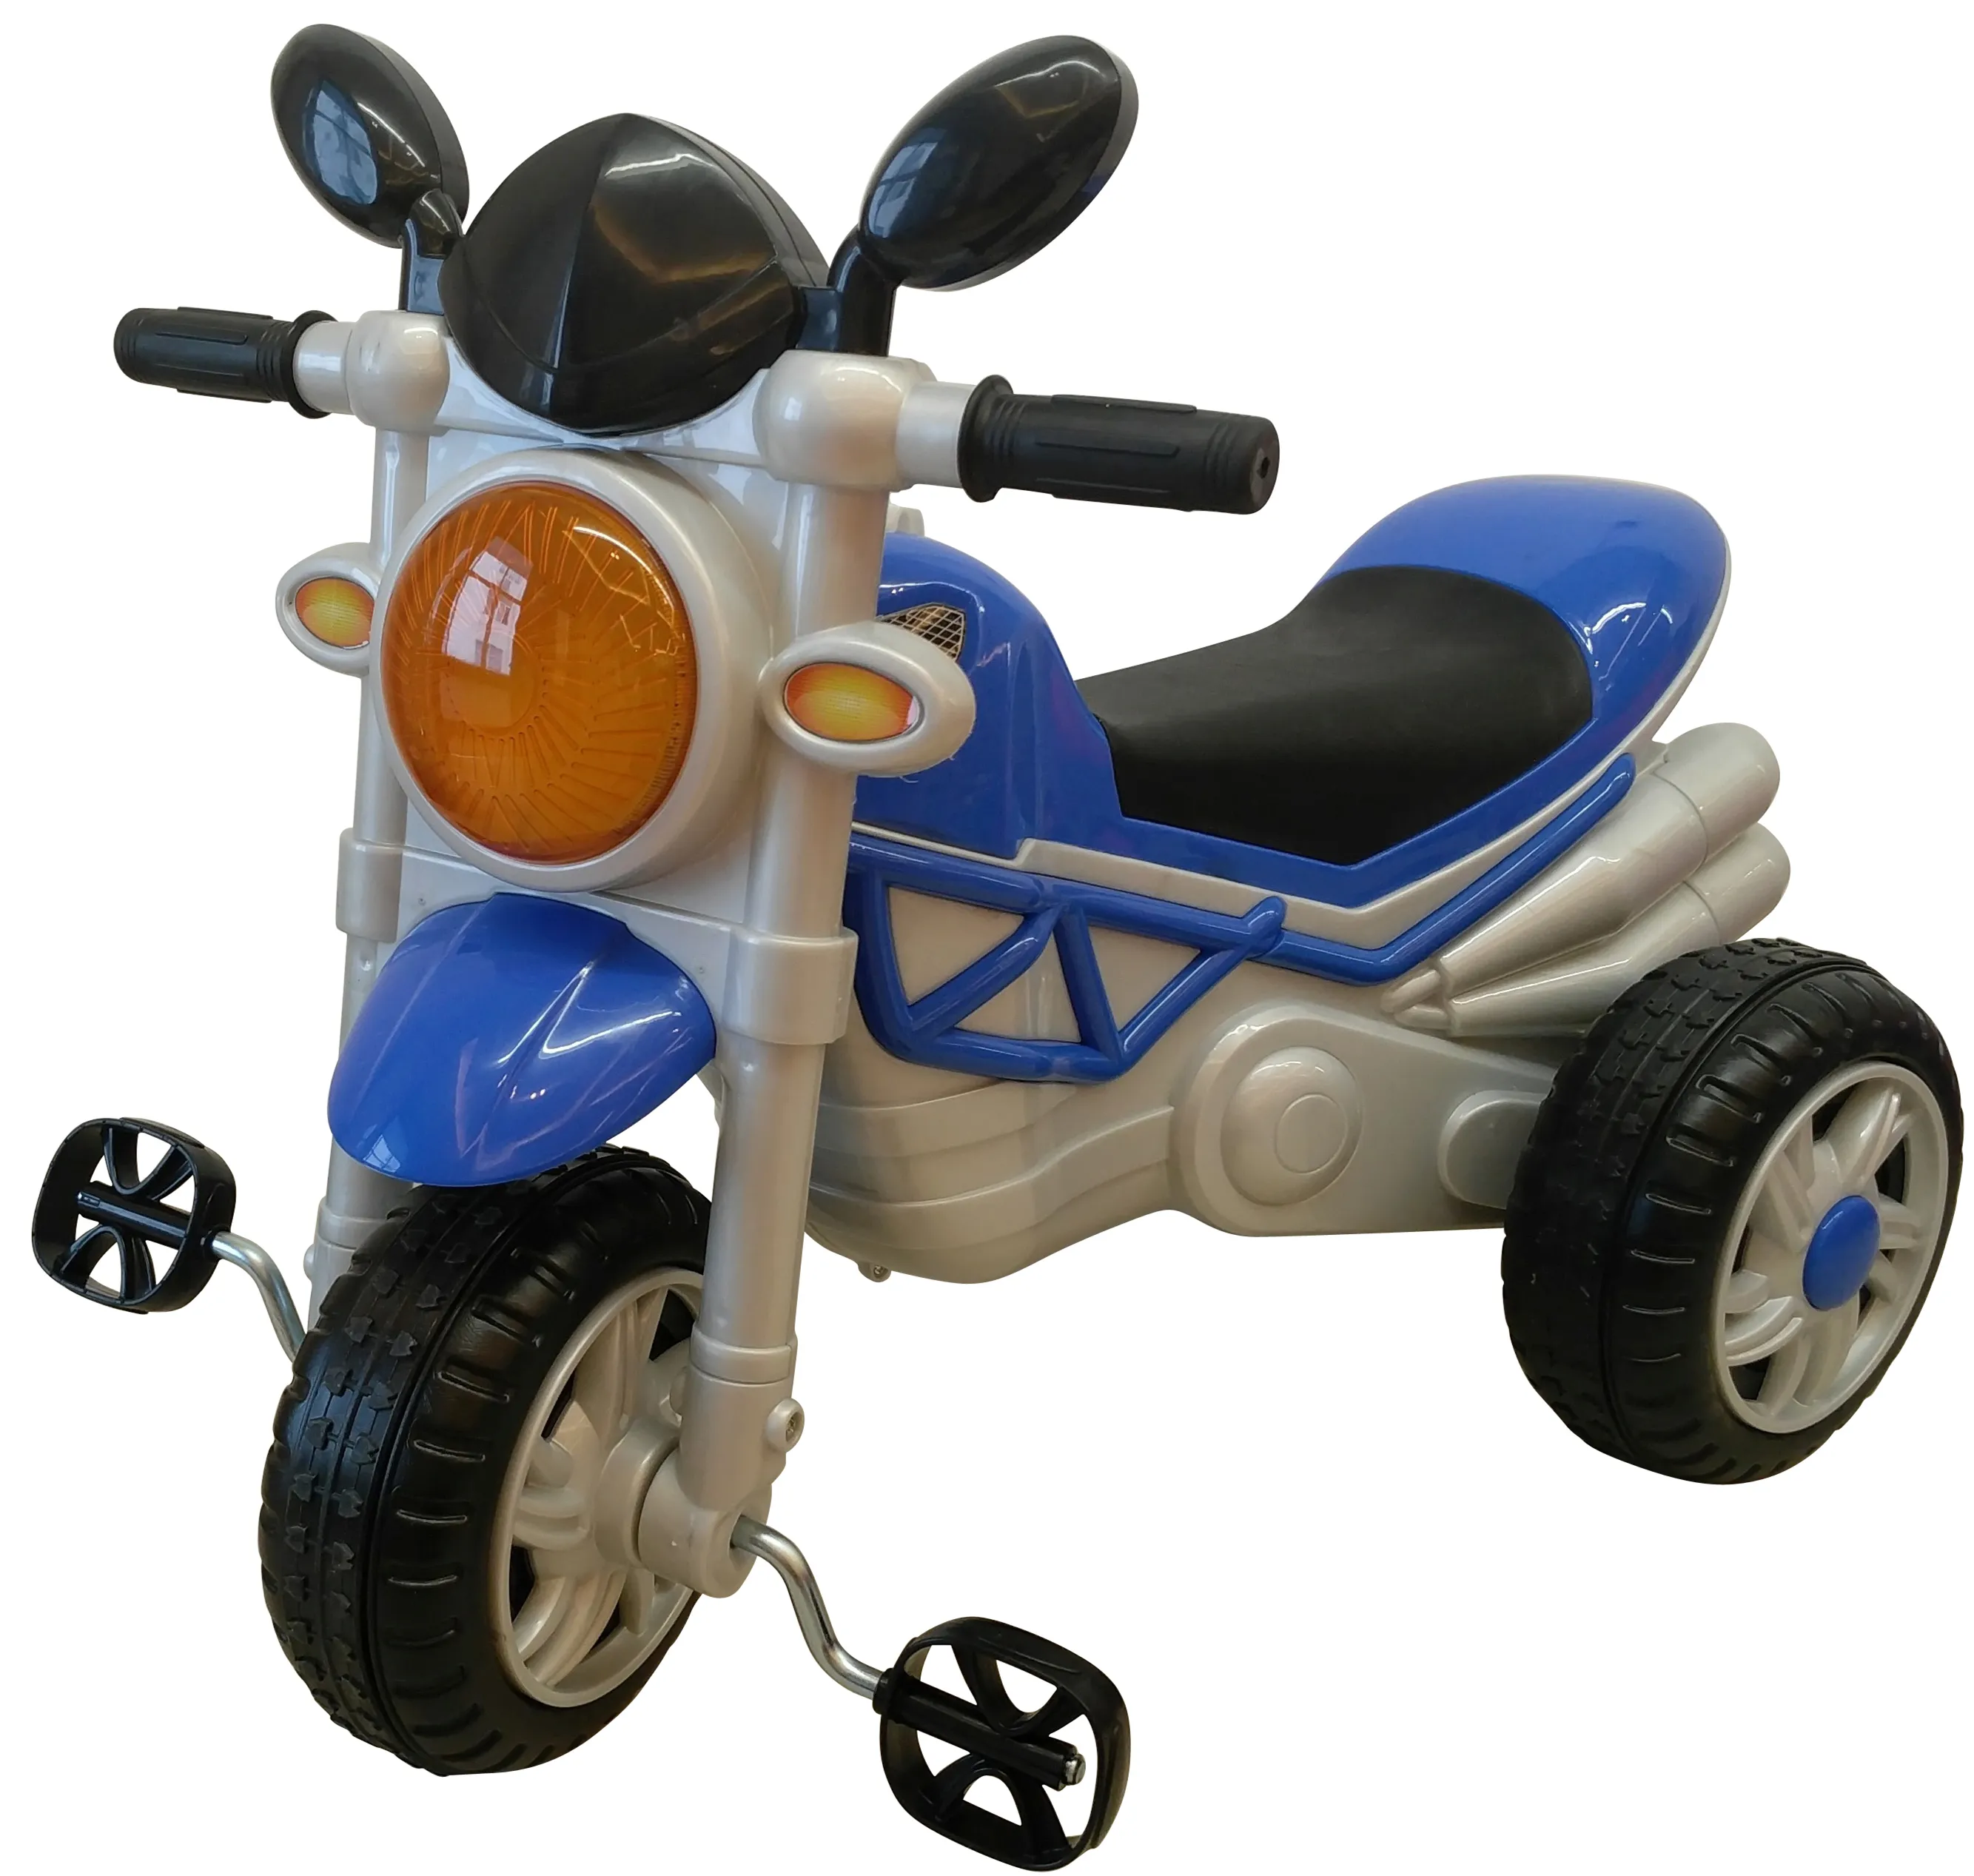 Venta caliente de alta calidad de los niños del bebé moto Triciclo de 3 ruedas (221)